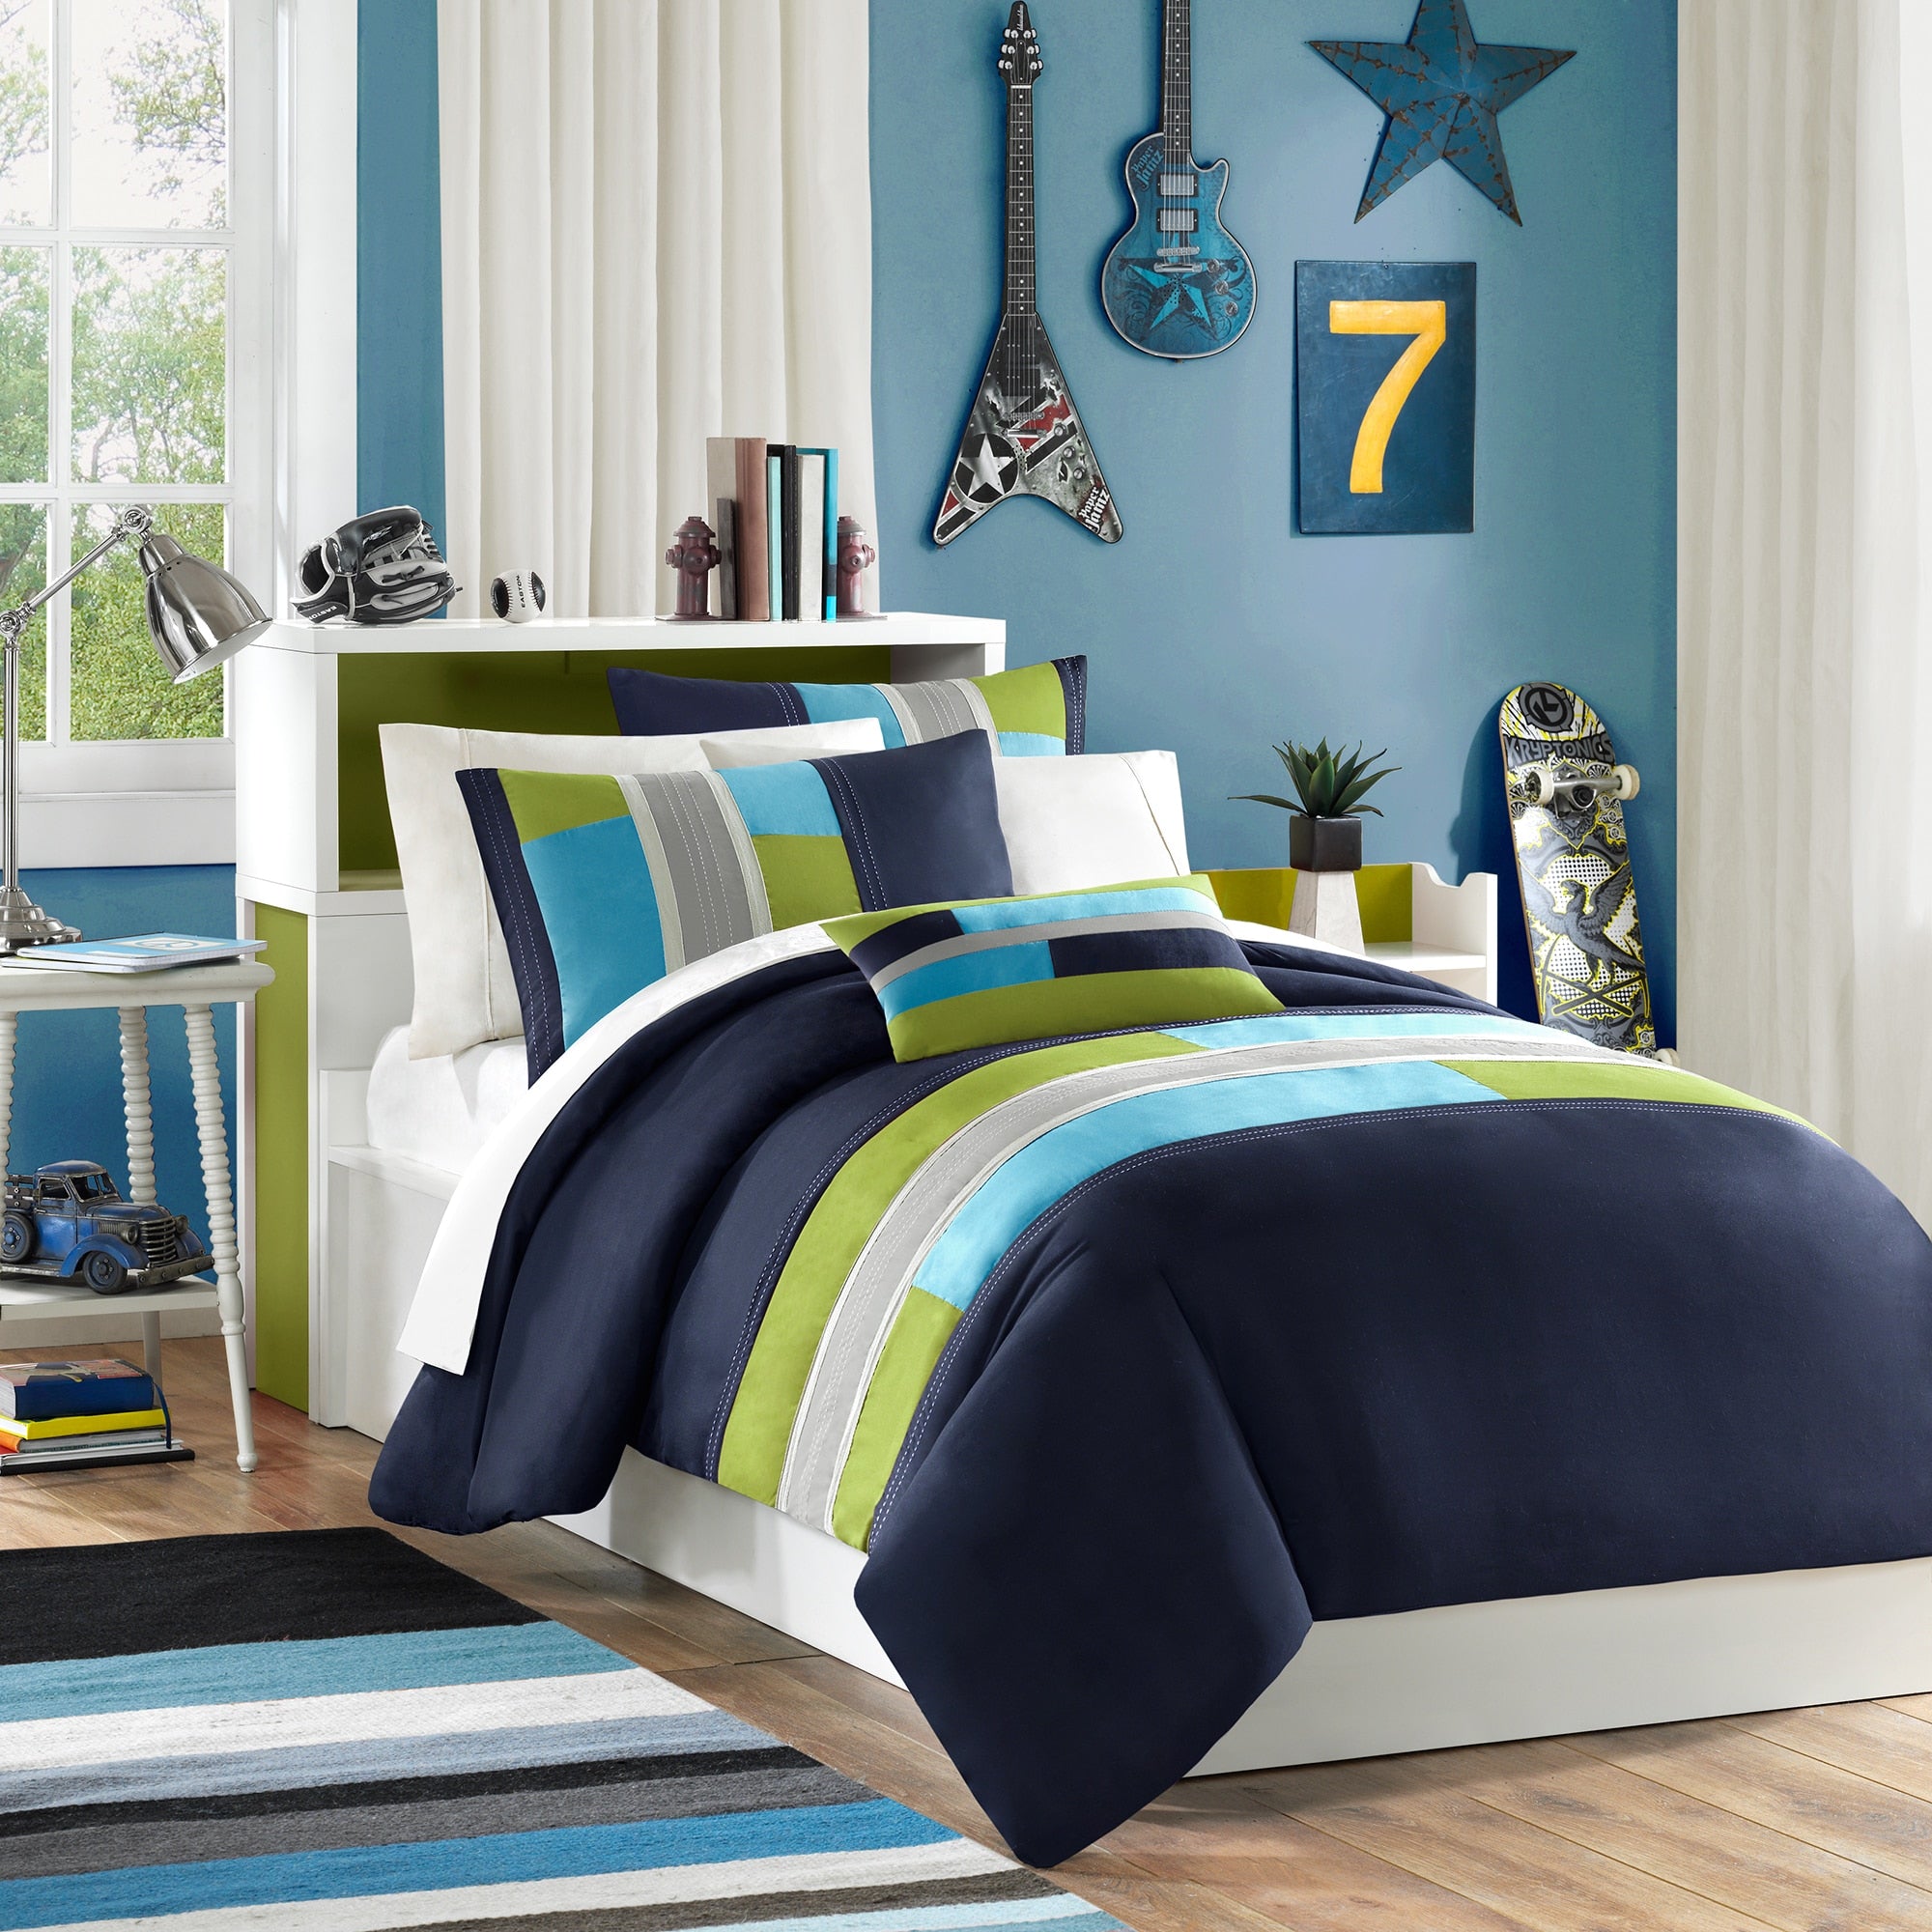 MI ZONE Duvet Modern Casual Vibrant Colorblock Design All Season Comforter Cover Teen Bedding, Boys Bedroom Décor